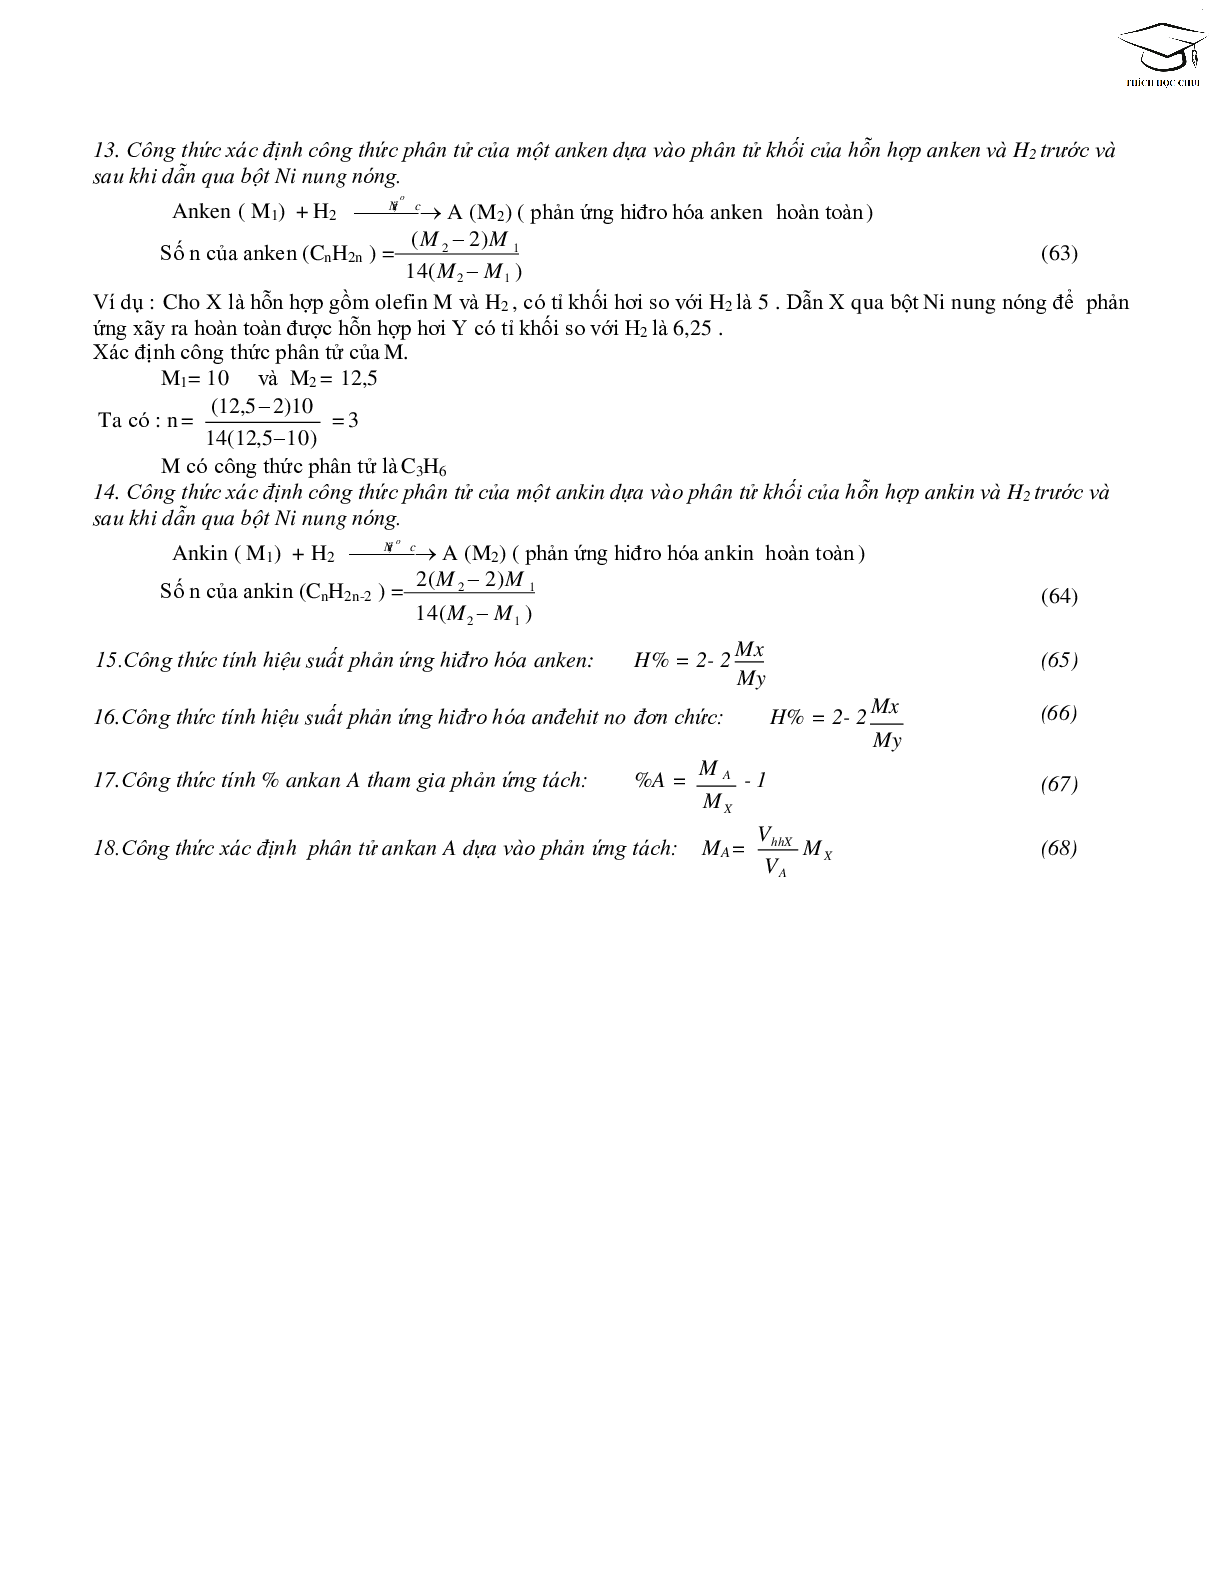 68 công thức giải nhanh bài tập trắc nghiệm môn hóa học lớp 12 (trang 9)